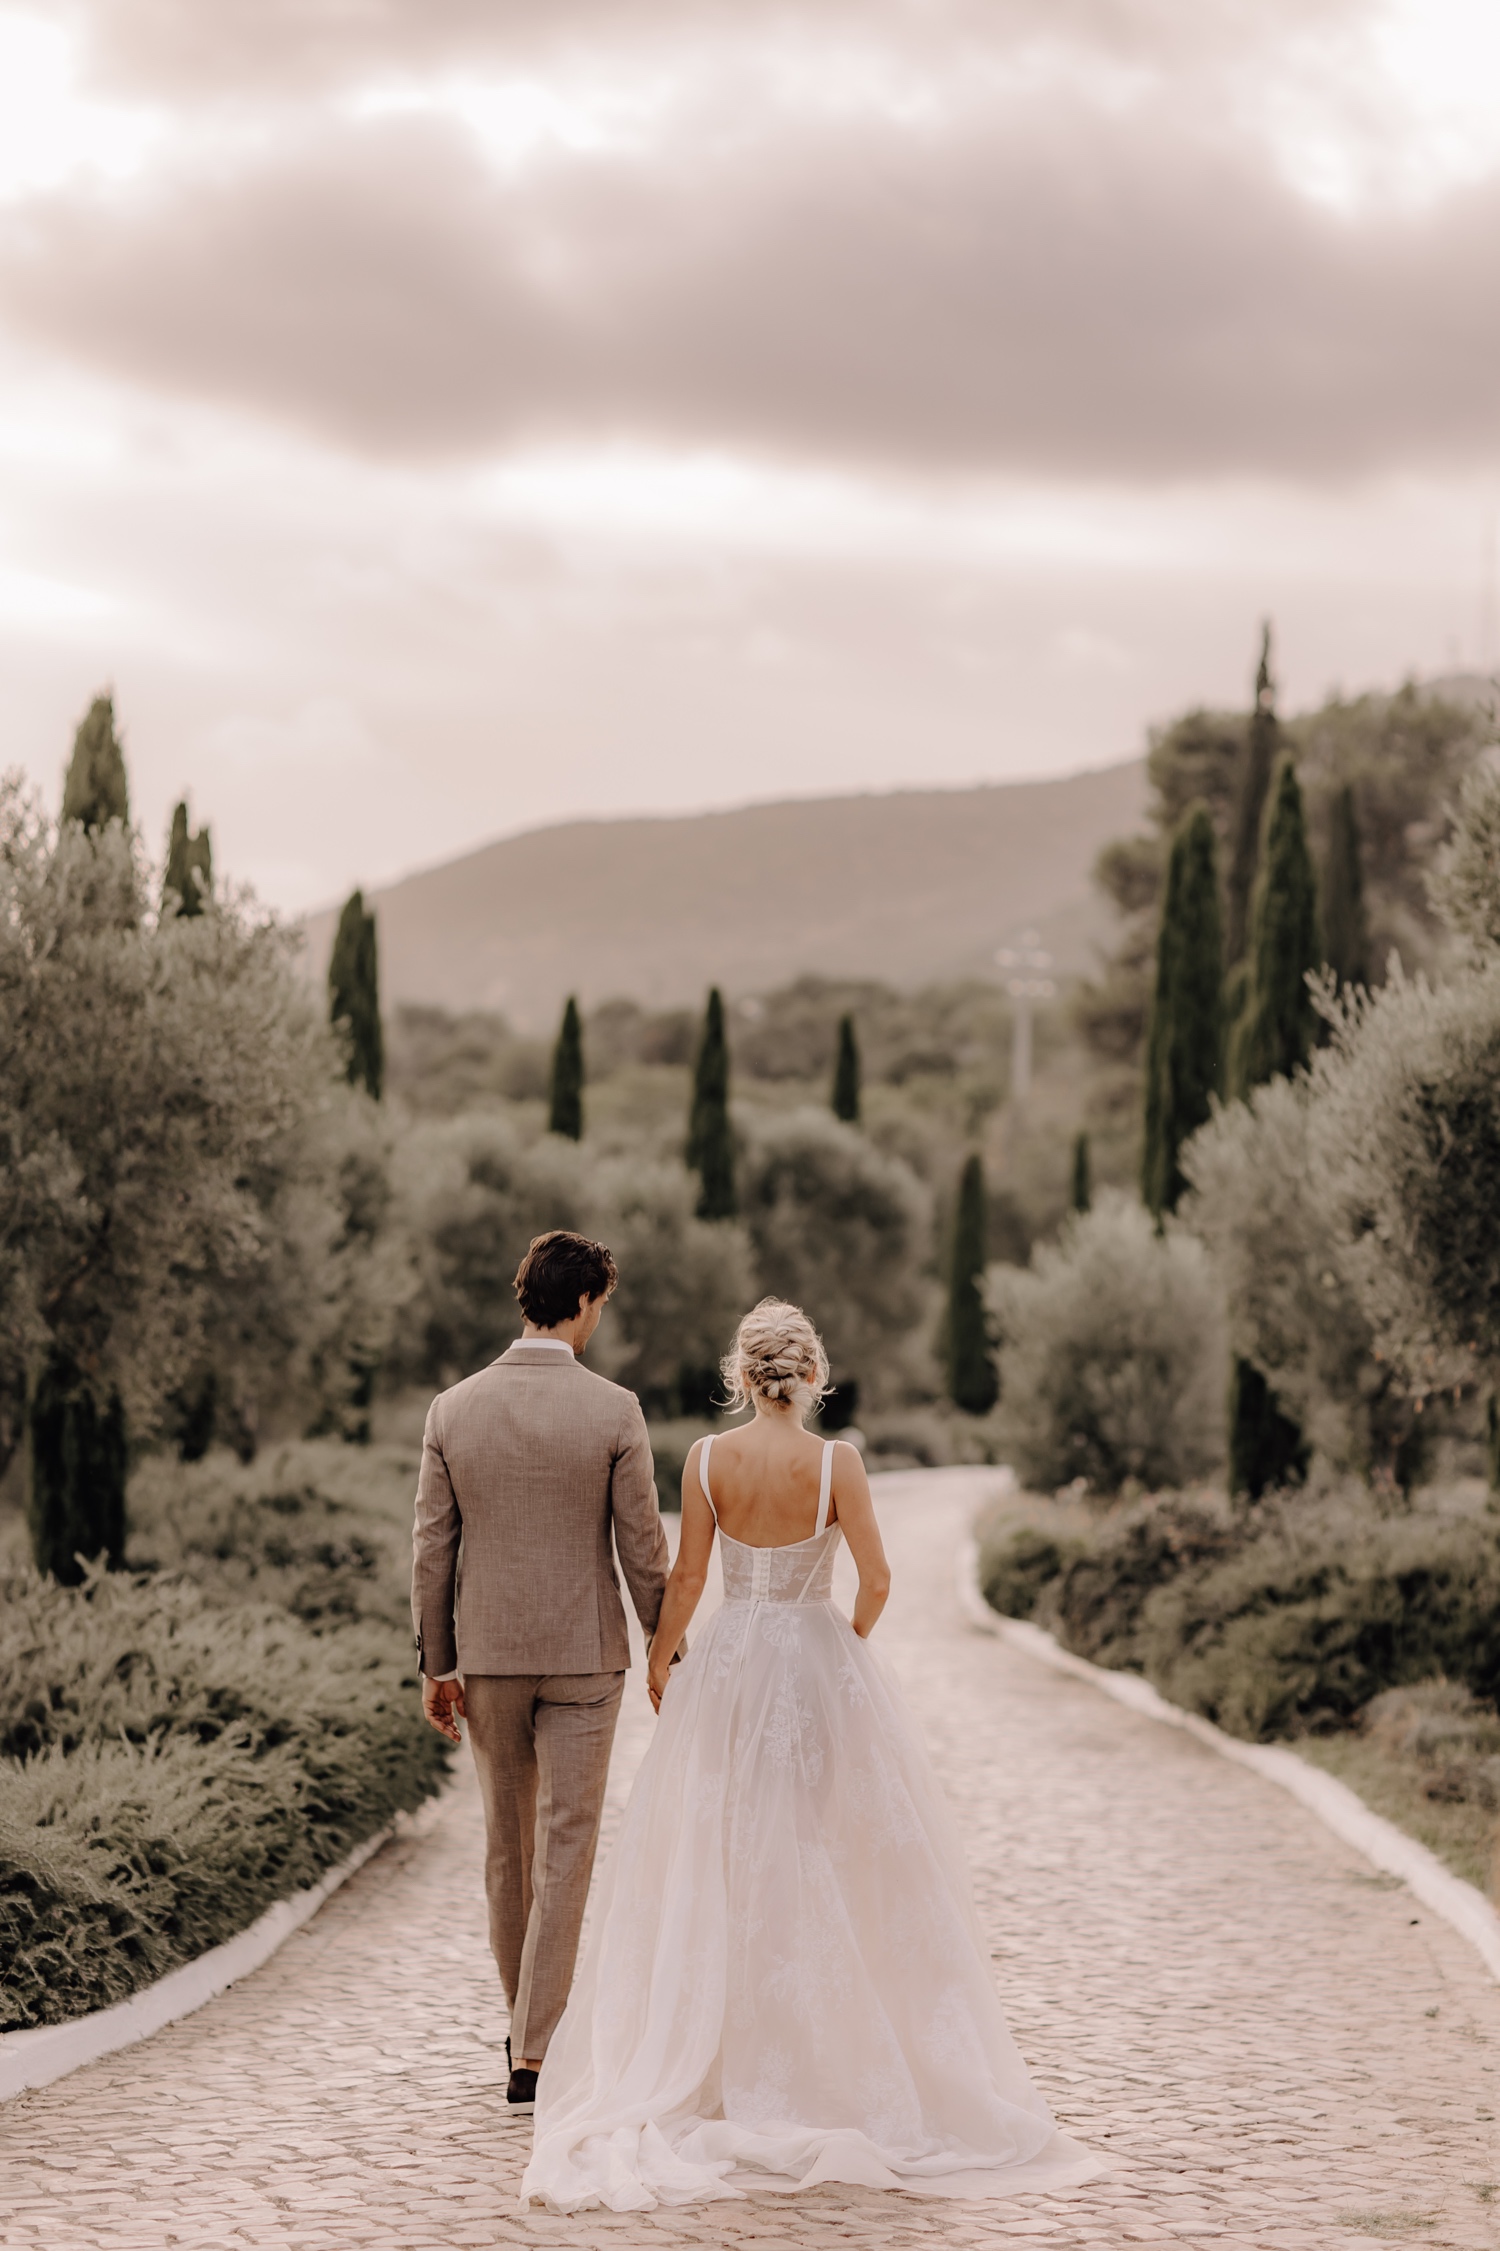 Huwelijksfotograaf buitenland - bruidspaar wandelt weg tussen de cipressen in Portugal